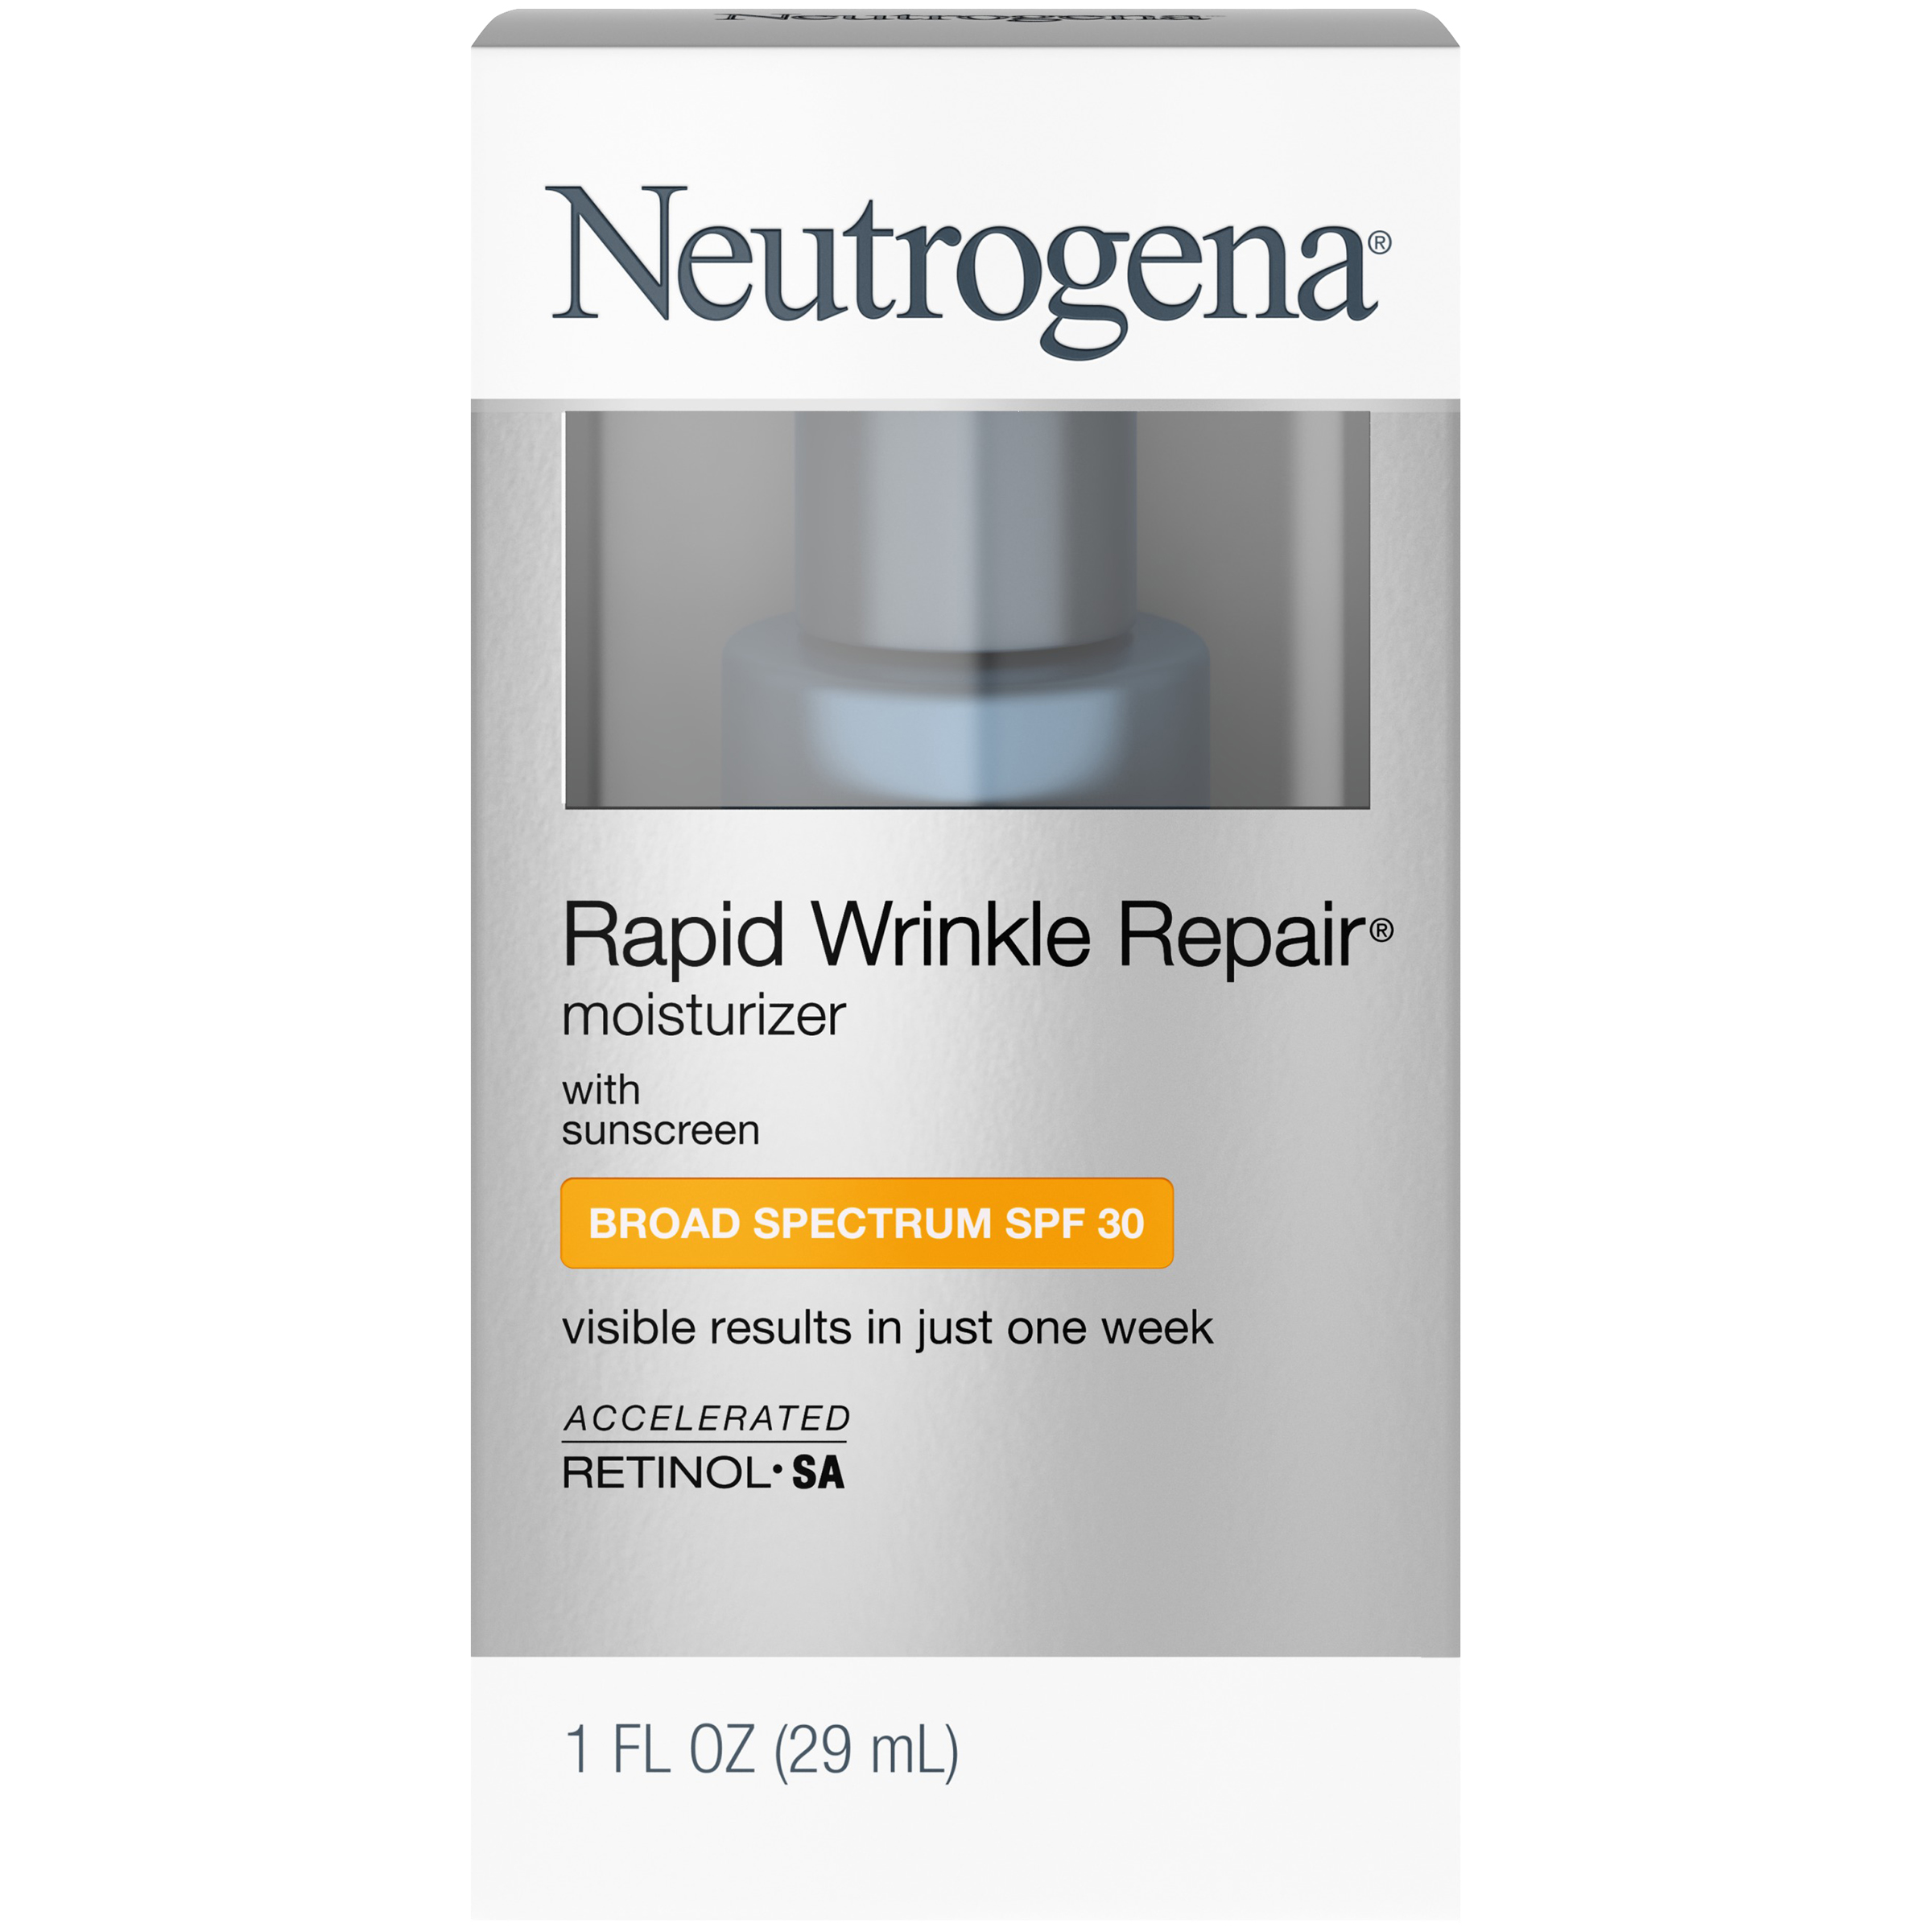 neutrogena fast wrinkle repair reviews